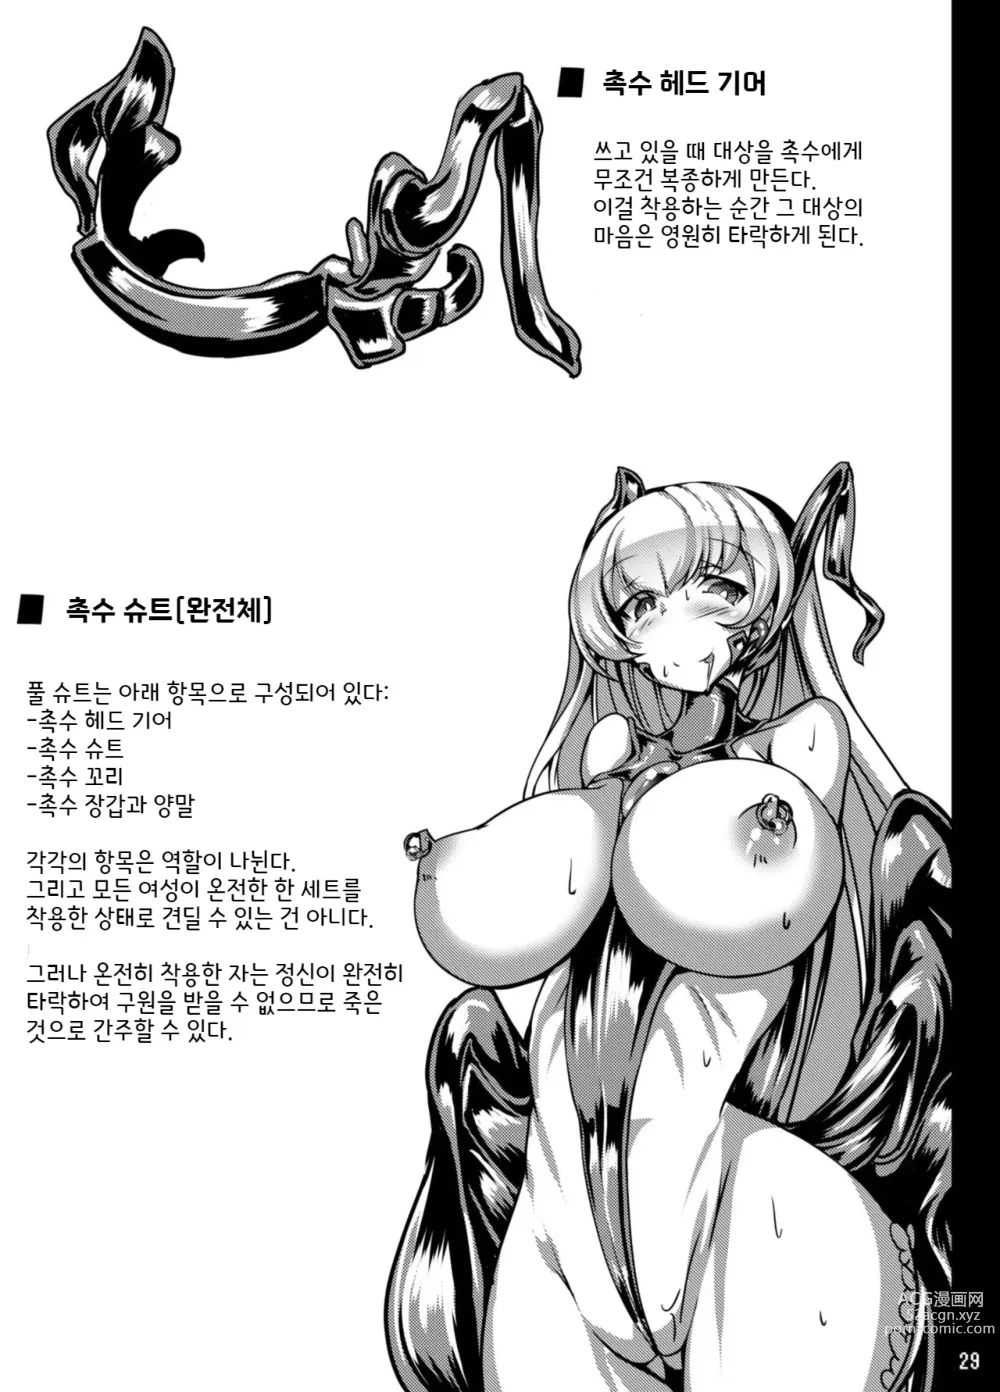 Page 30 of doujinshi 쿠로우사짱이 촉수님의 암컷이 되는 책